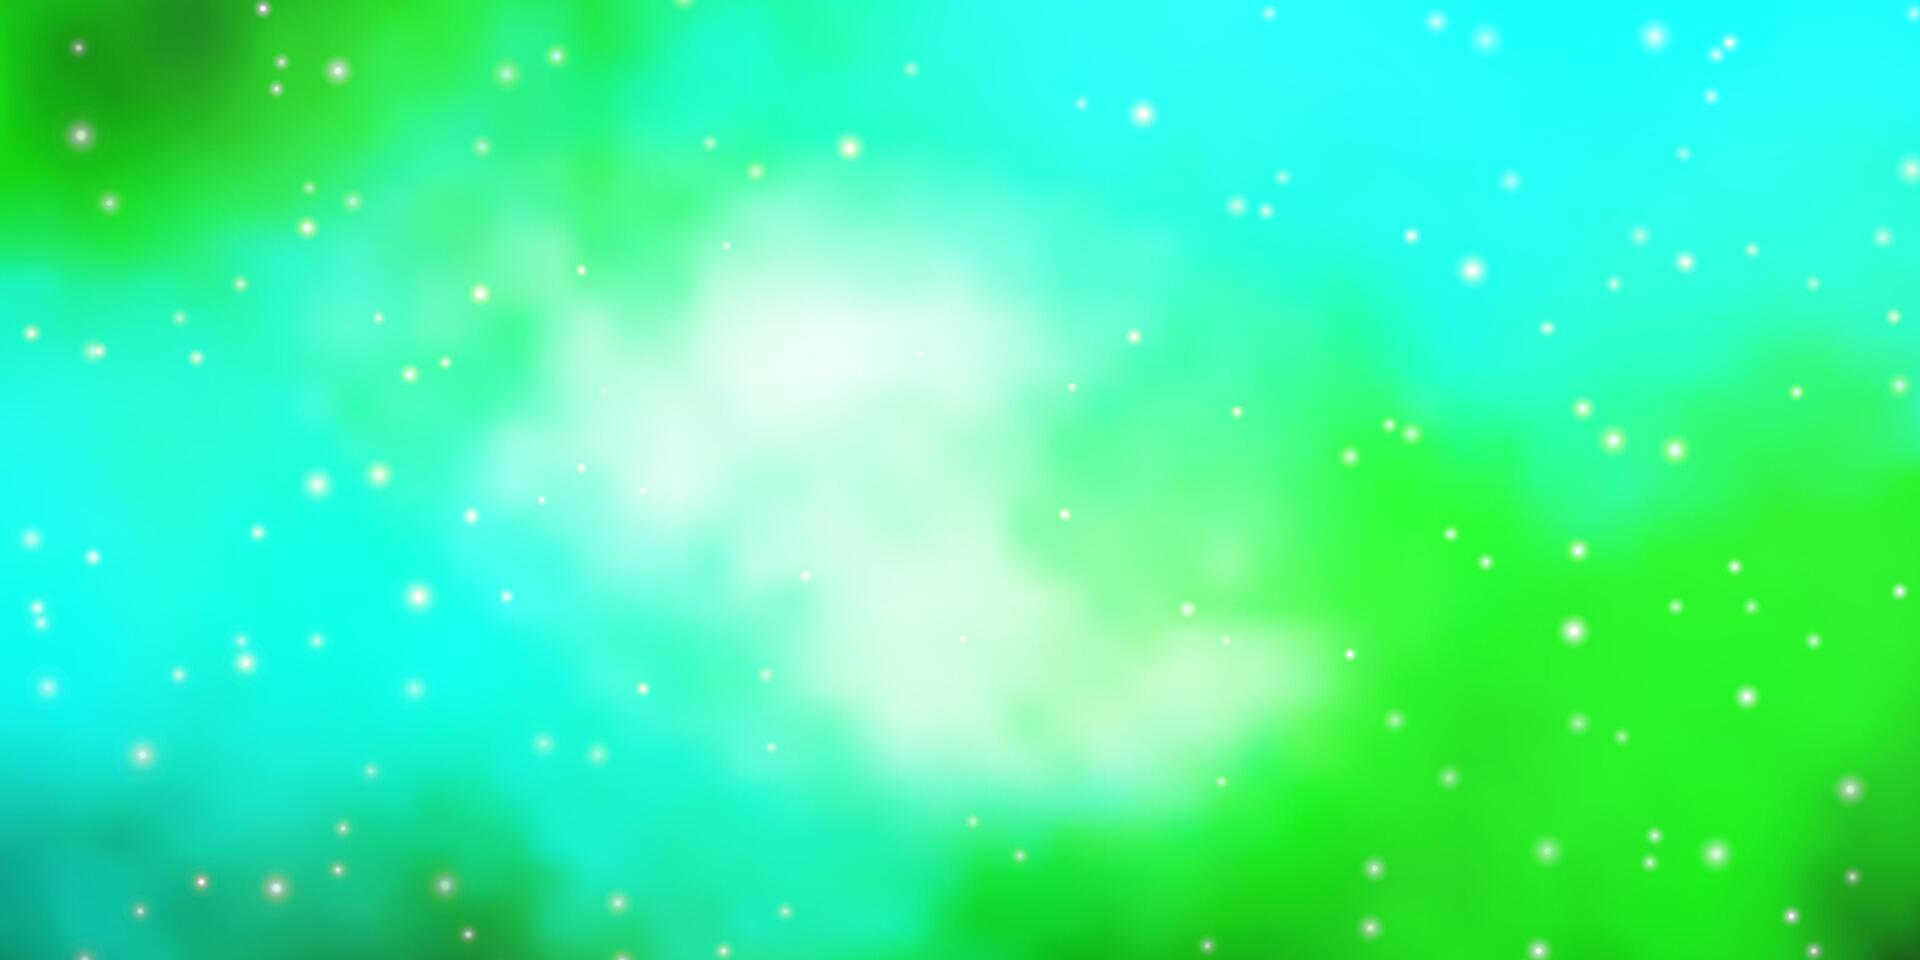 ljus blå, grön mönster med abstrakt stjärnor. vektor